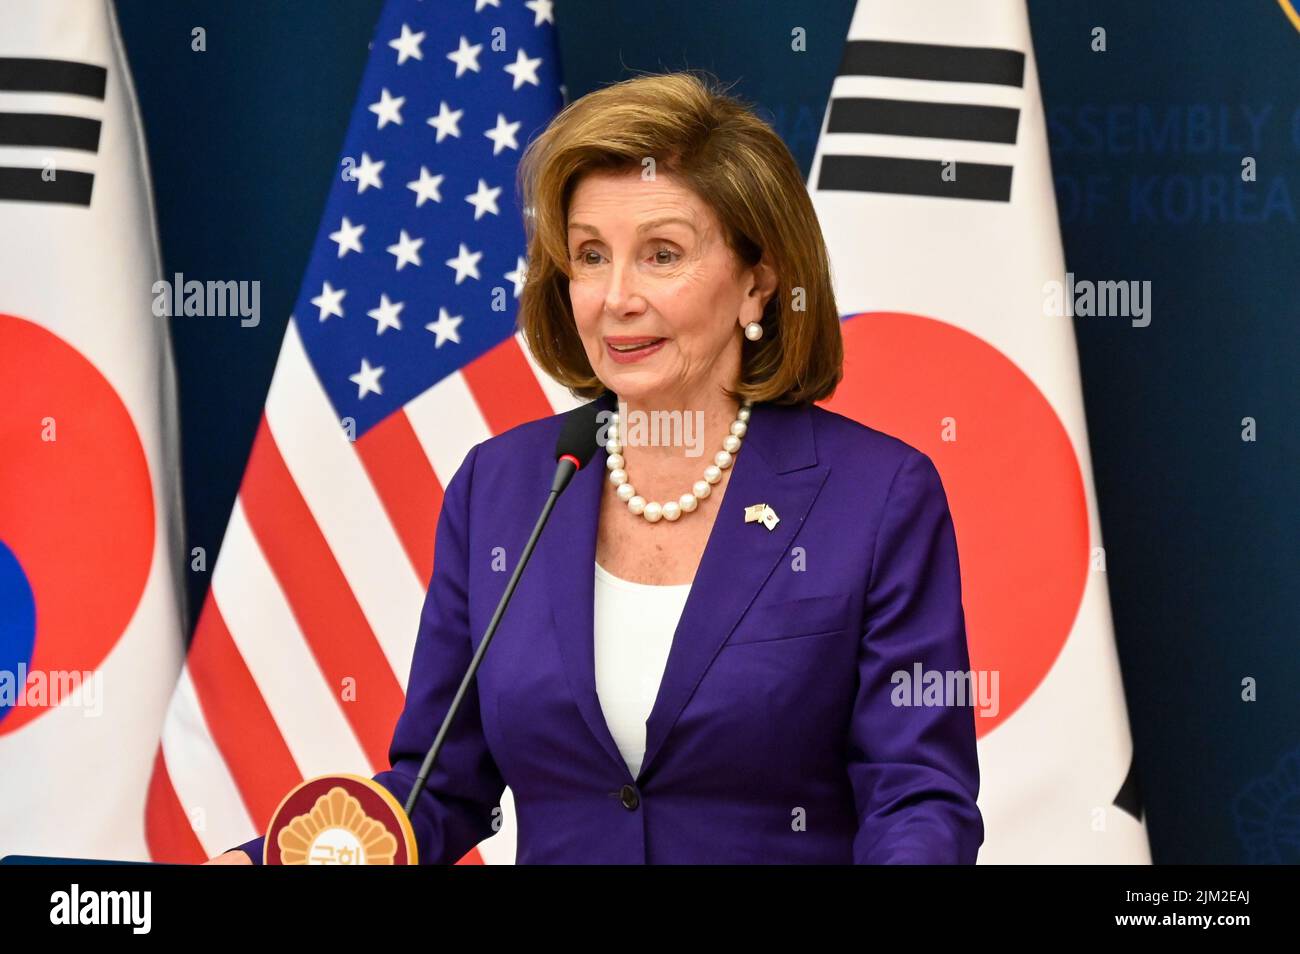 Séoul, Corée du Sud. 04th août 2022. Nancy Pelosi, Présidente de la Chambre des représentants des États-Unis, prend la parole jeudi à 4 août 2022 lors d'une conférence de presse à l'Assemblée nationale à Séoul, en Corée du Sud. Le Président Pelosi s'est rendu en Corée du Sud après un voyage à Taïwan qui a suscité une réaction furieuse de la part de la Chine. Photo de Thomas Maresca/UPI crédit: UPI/Alay Live News Banque D'Images